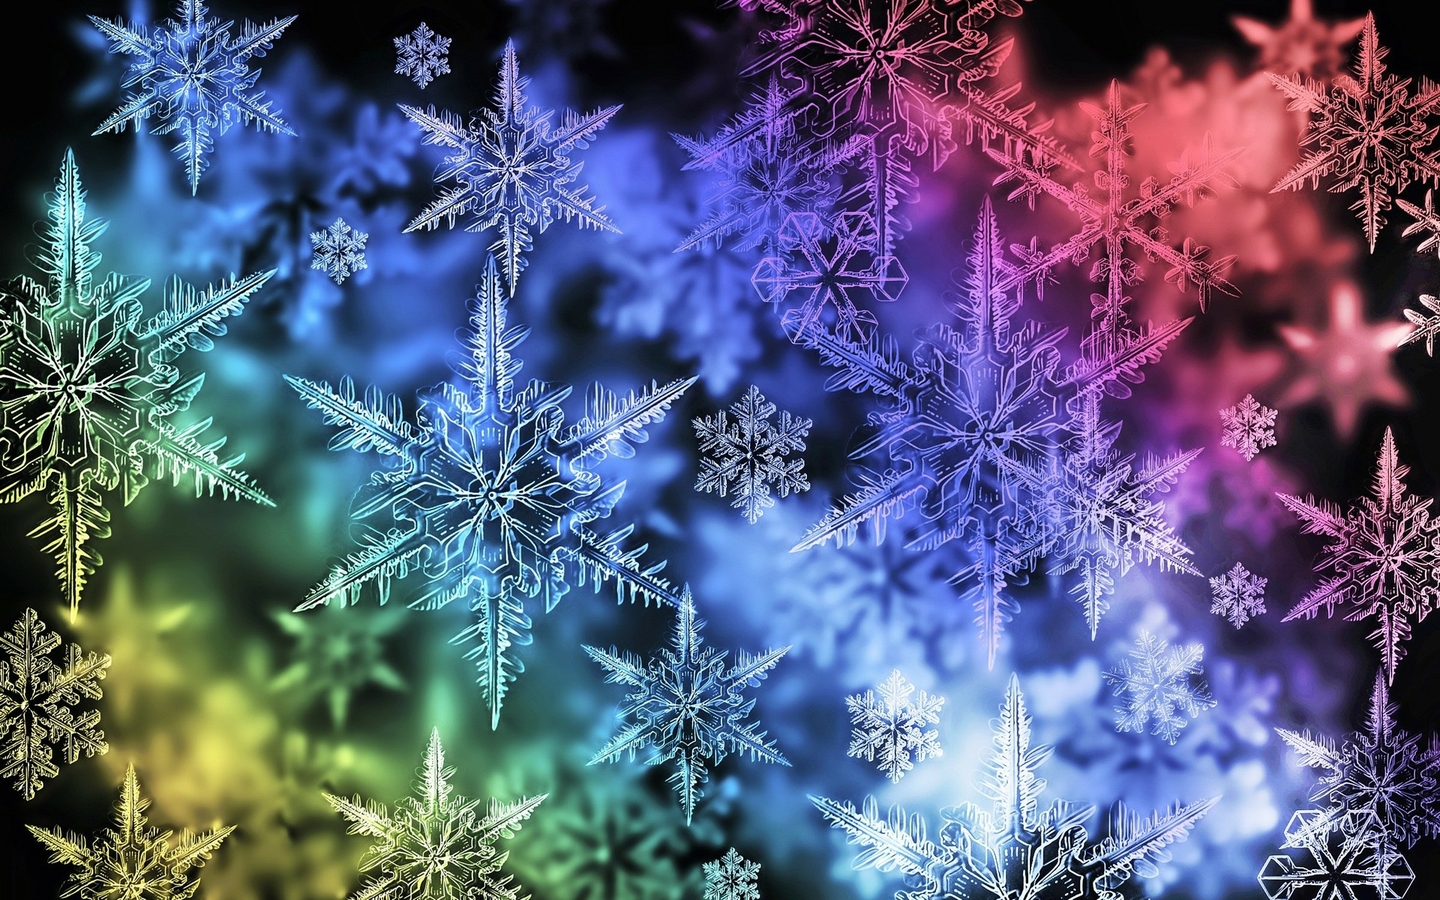 48+] Snowflake Wallpaper for Desktop - WallpaperSafari